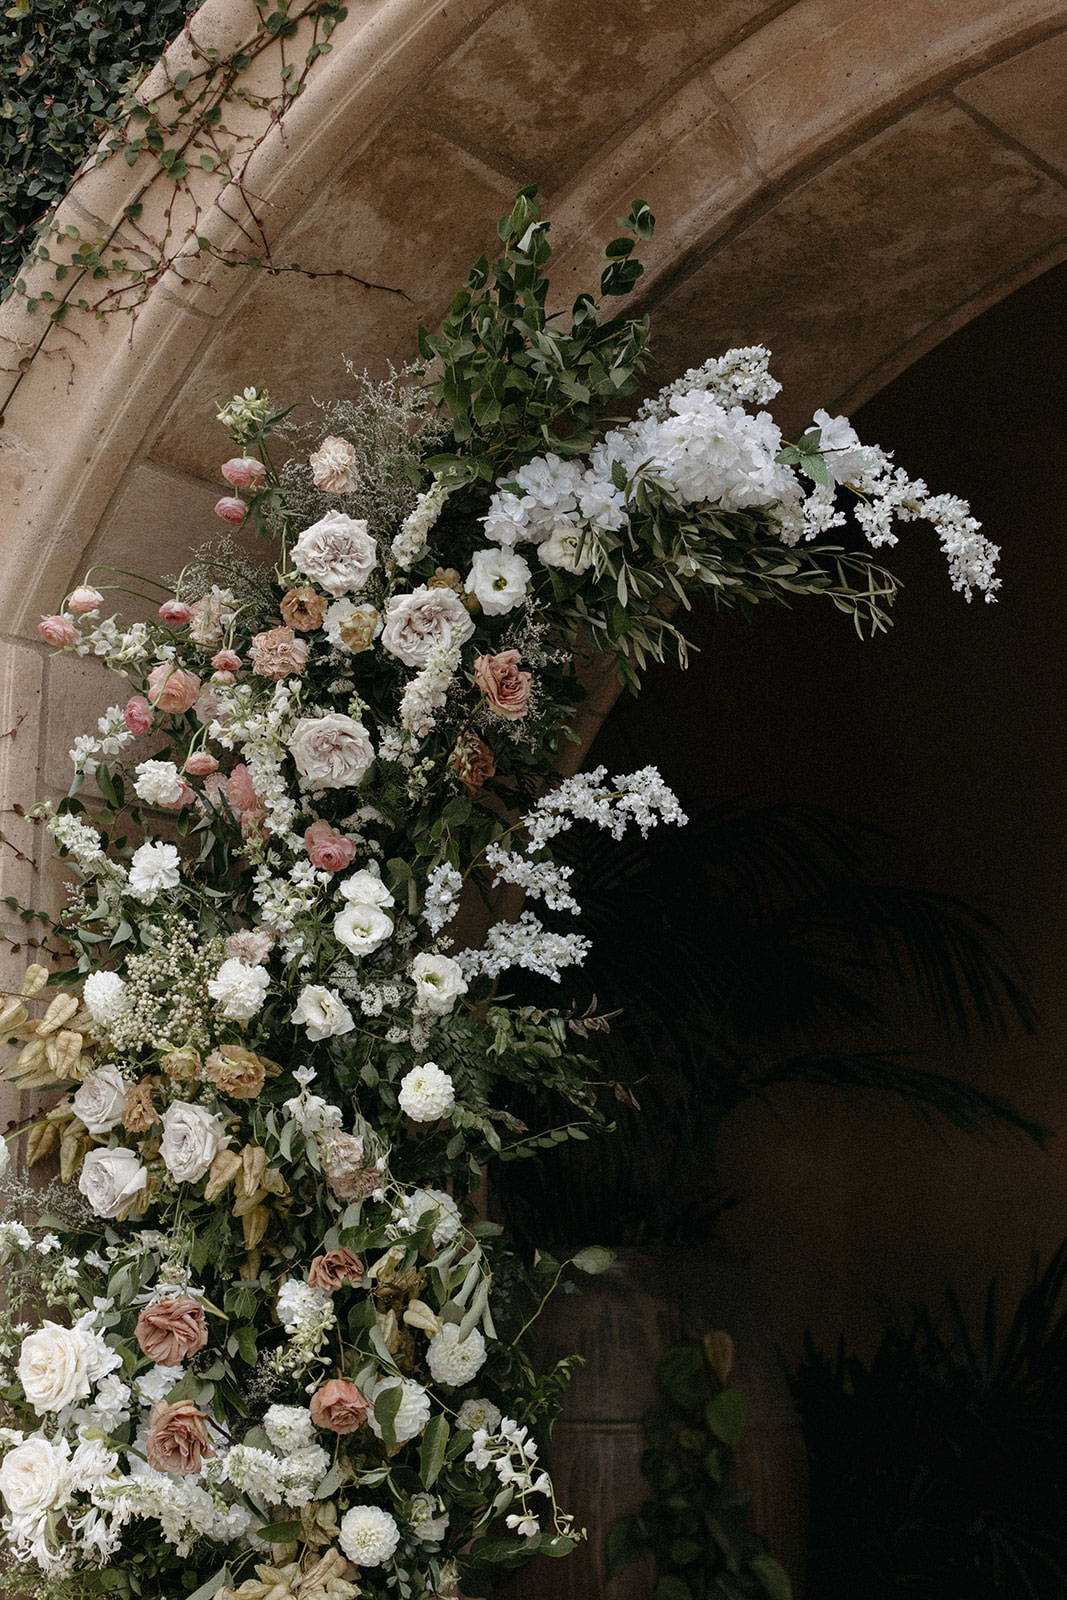 Floral arrangement under archway